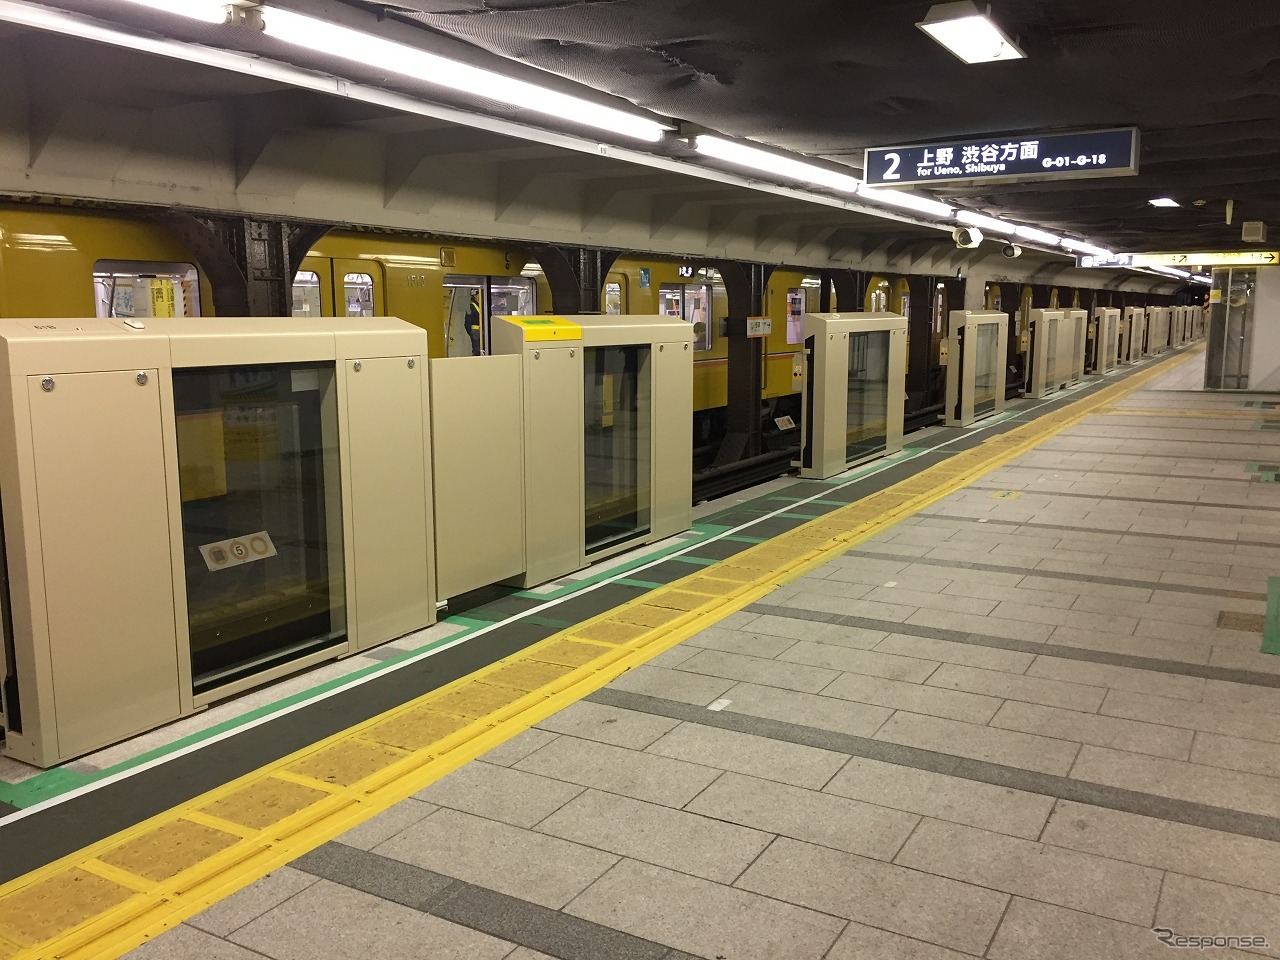 東京メトロ全駅へのホームドア整備完了は2025年度の見通しとなった。写真は浅草駅のホームドア。